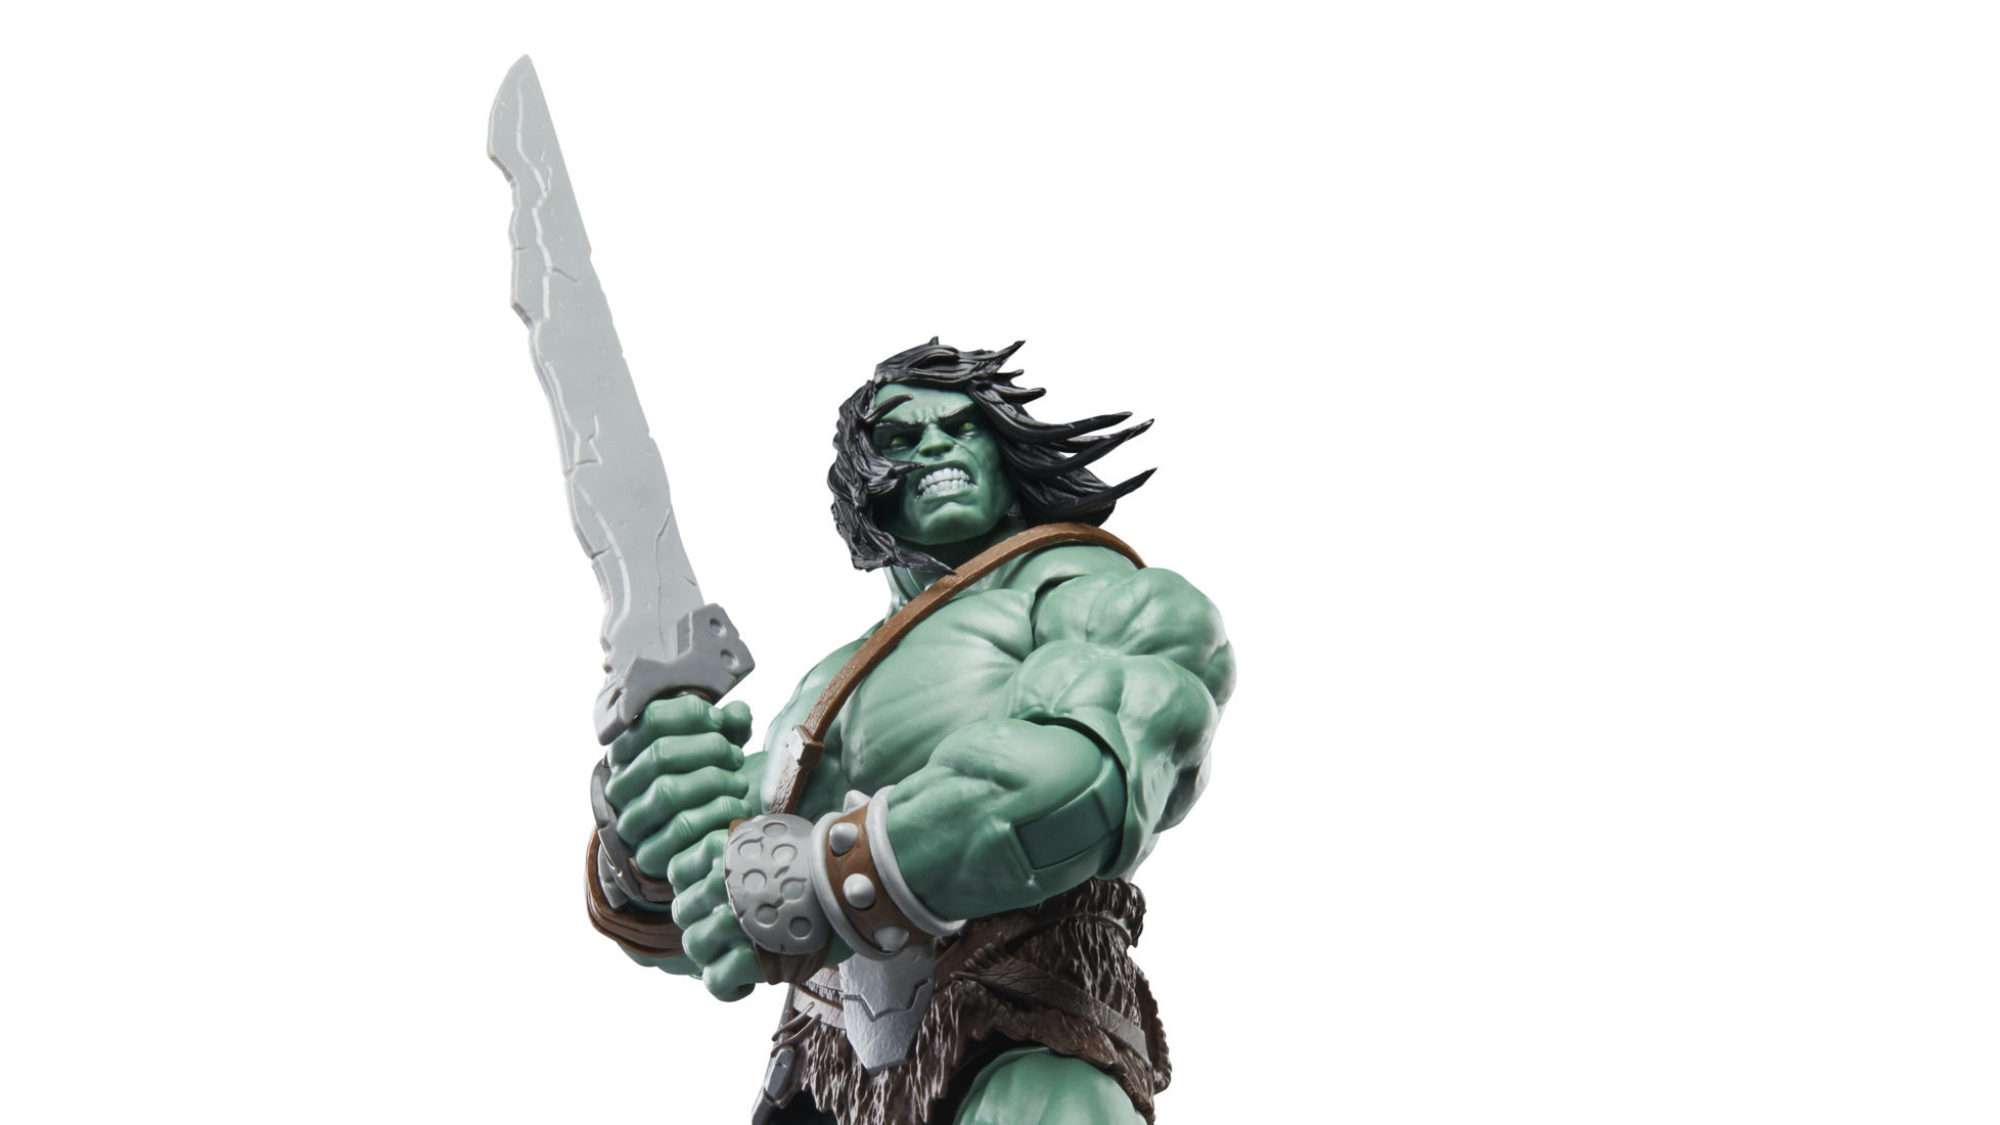 Return to Planet Hulk as Skaar, Son of Hulk Joins the Marvel Legends